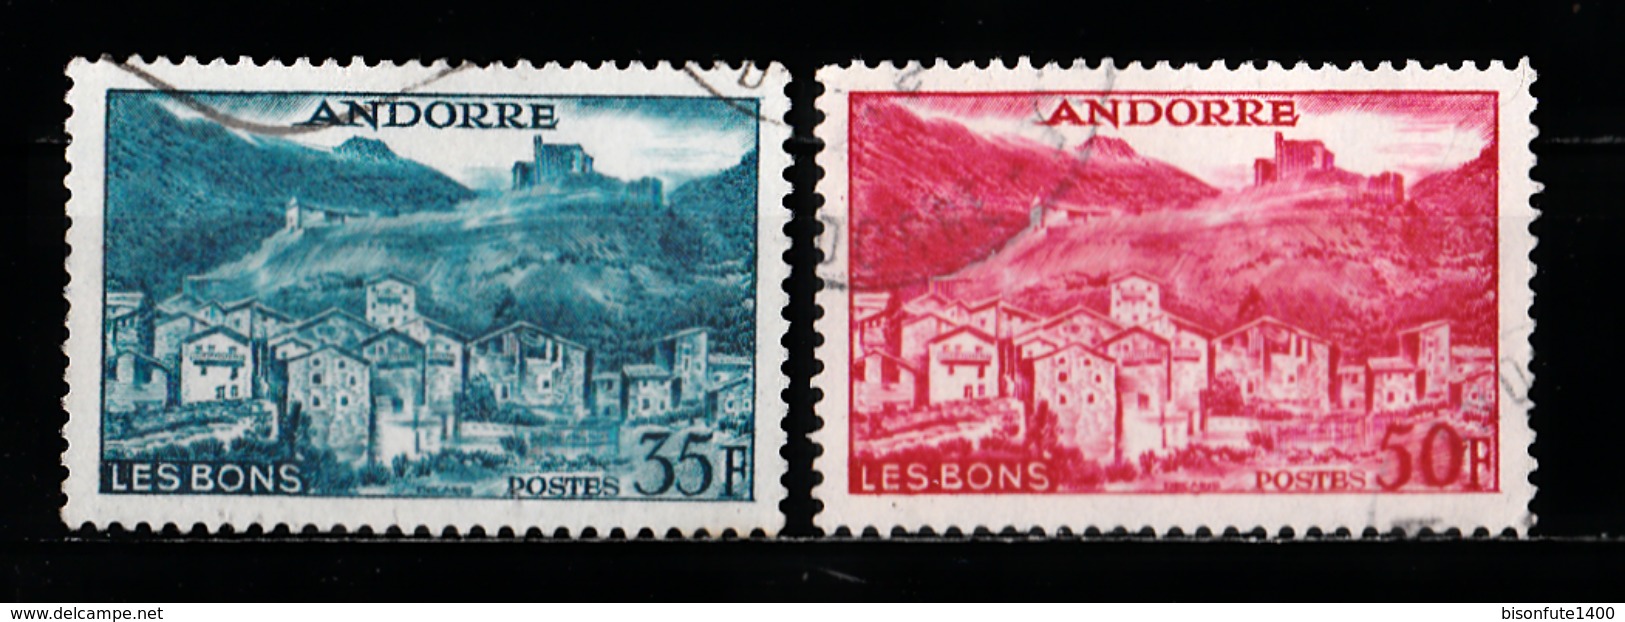 Andorre Français 1955 - 1958 : Timbres Yvert & Tellier N° 138 - 139 - 141 - 143 - 144 - 145 - 146 - 147 - 148 - 149 -... - Oblitérés